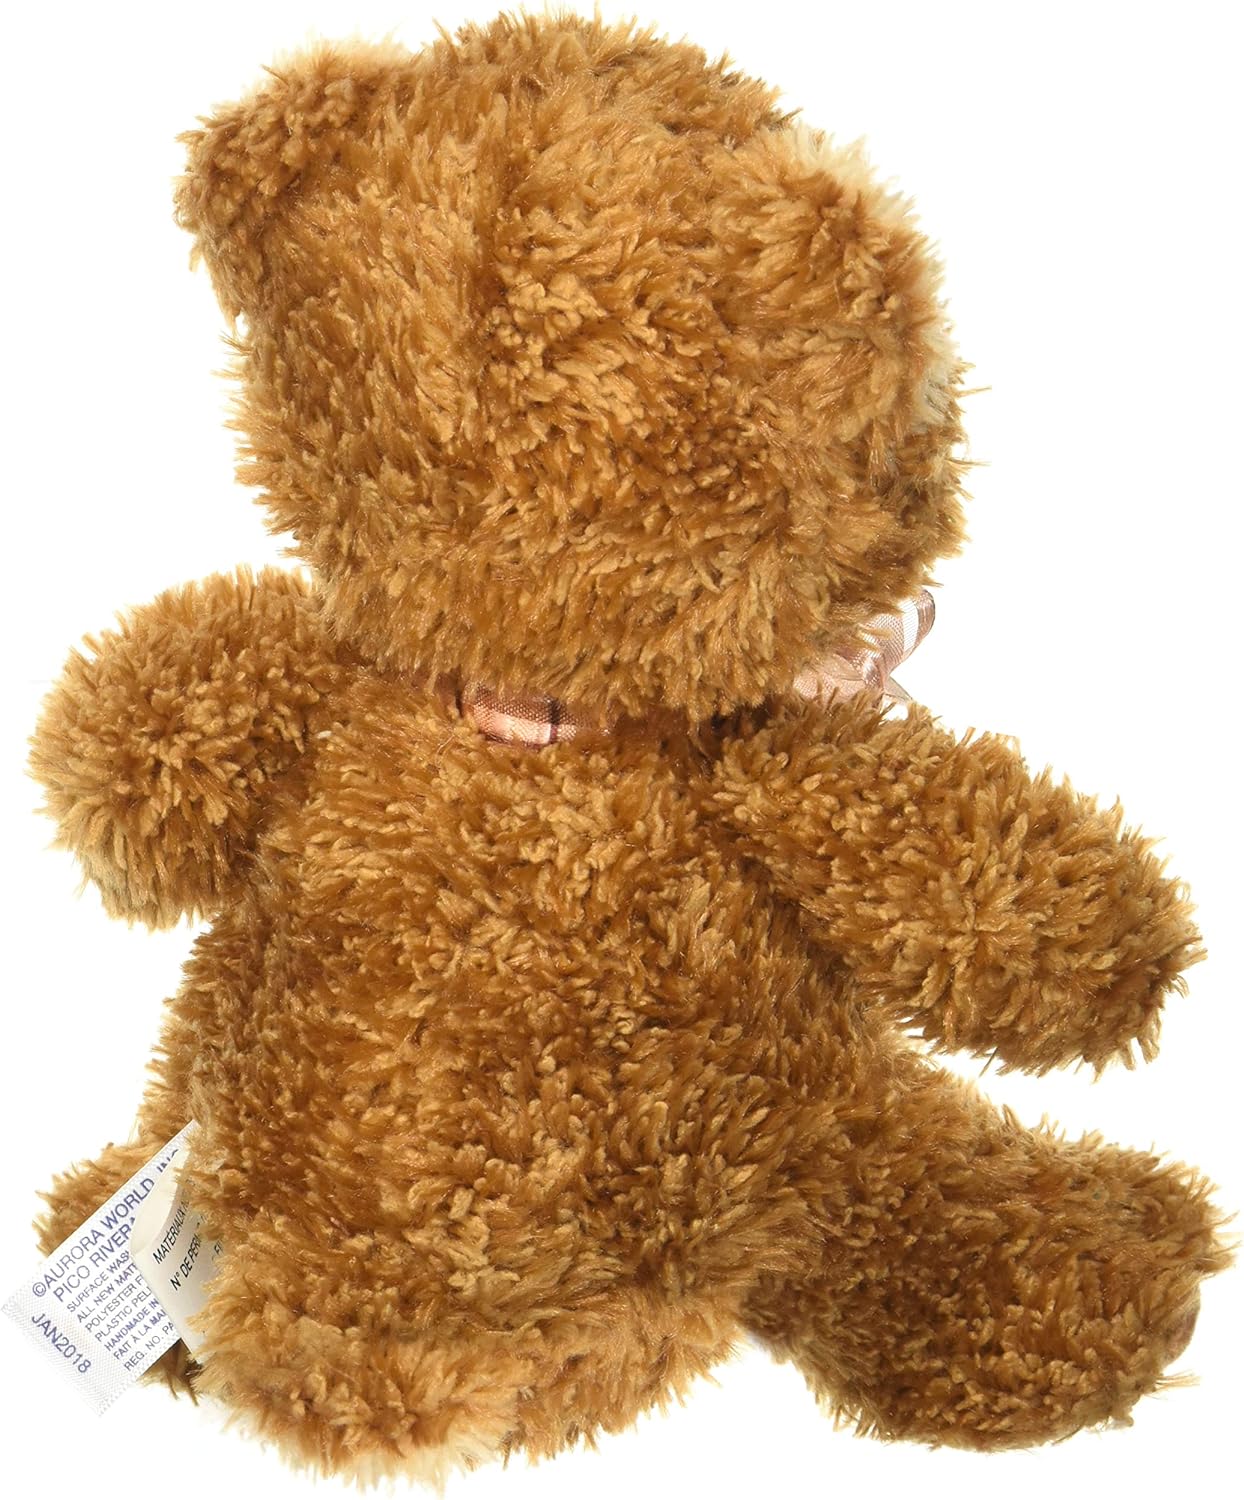 Aurora 8" Snuggly Bear Brown Sugar Stuffed Animal #01595